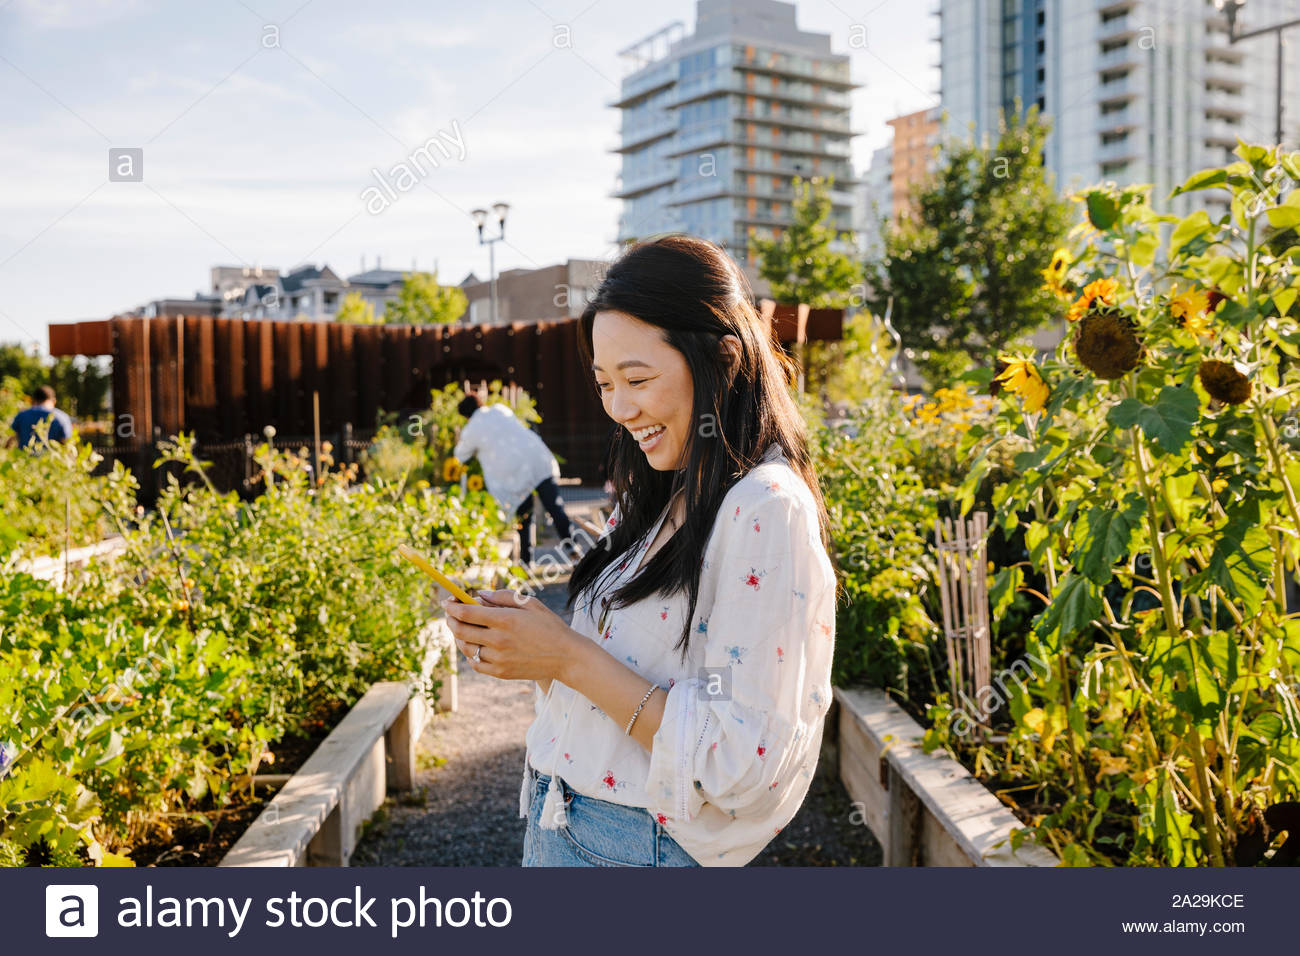 Glückliche junge Frau mit smart phone in sonniger, städtischen Gemeinschaft garten Stockfoto